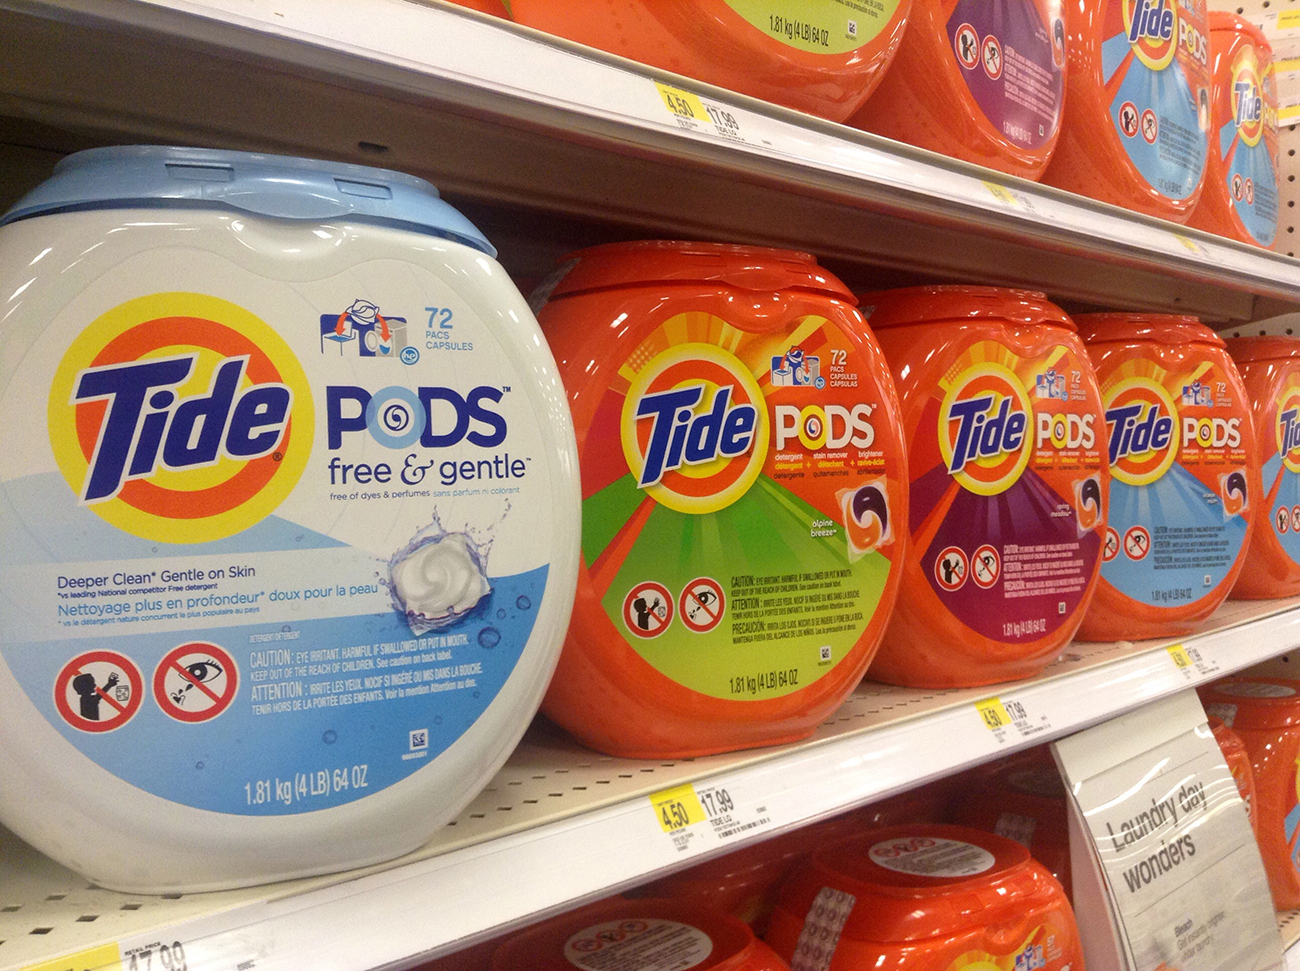 Una foto muestra un primer plano de Tide Pods exhibidos en los estantes de un supermercado.